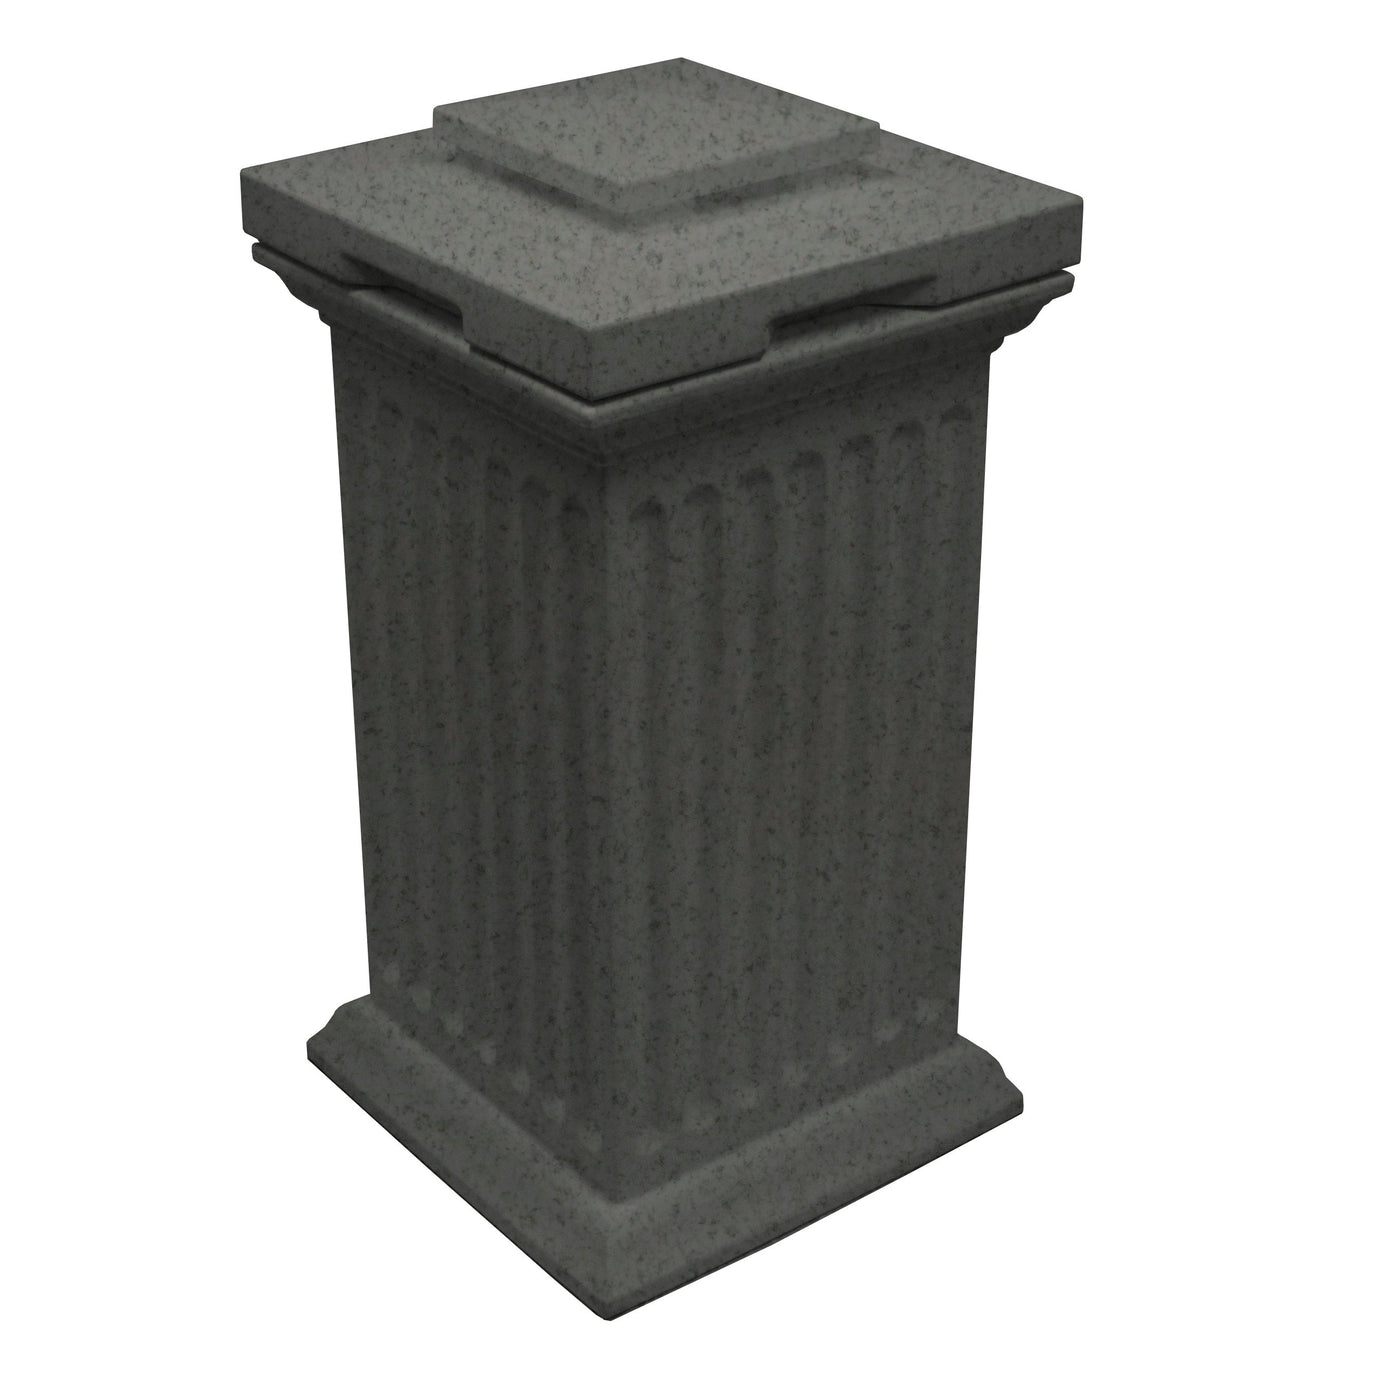 Savannah Column Storage and Waste Bin